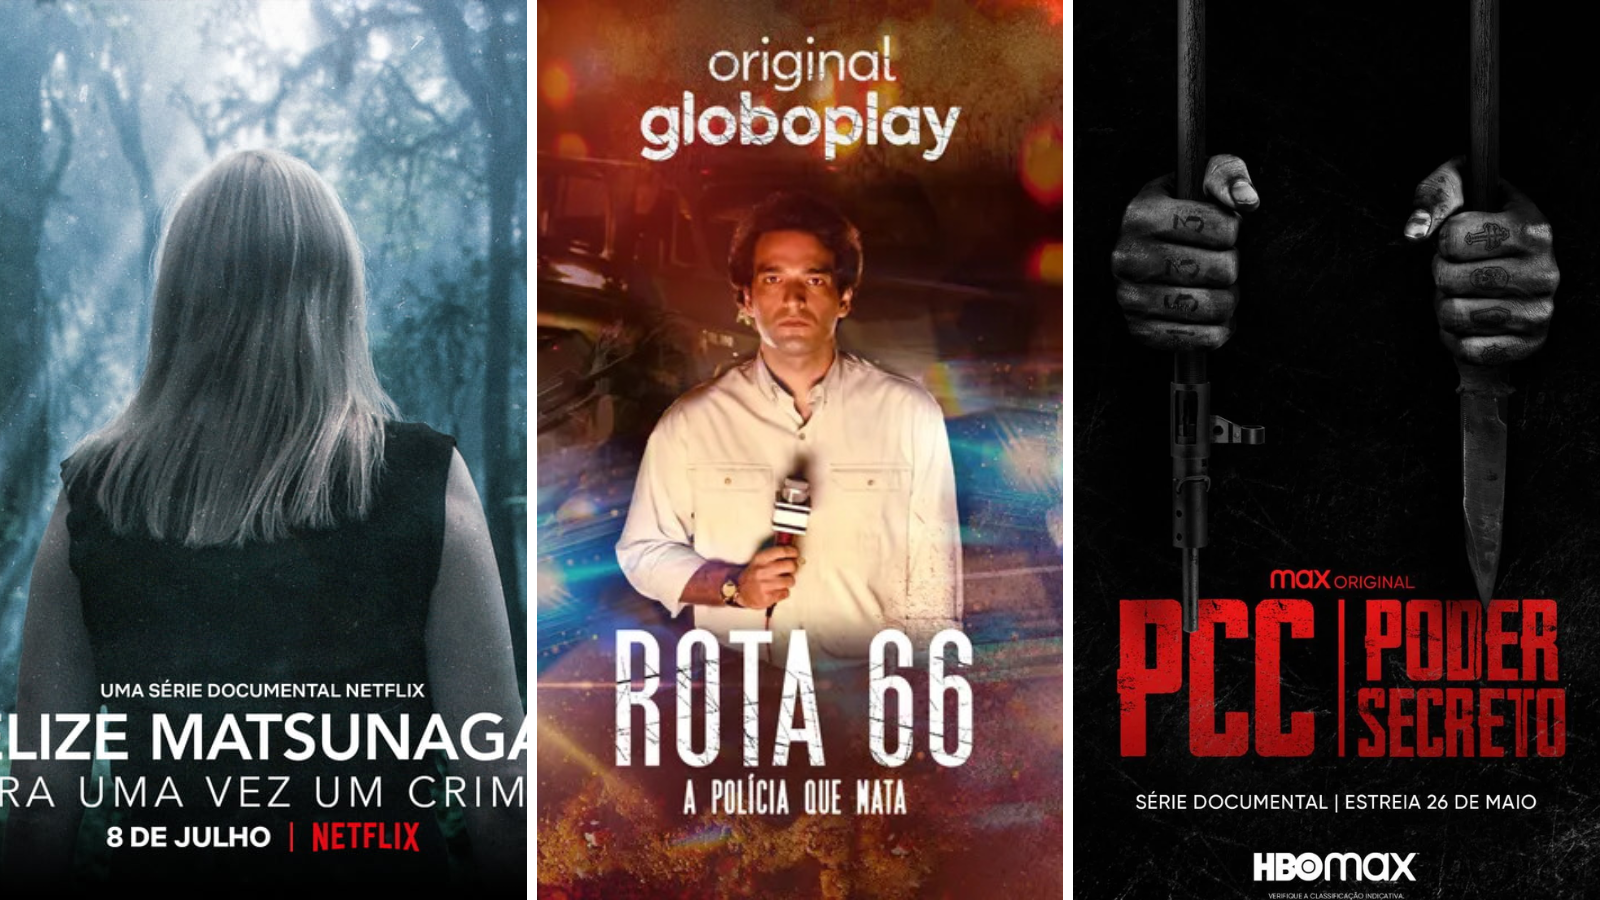 Exemplos de produções cinematográficas sobre crimes reais produzidas no Brasil